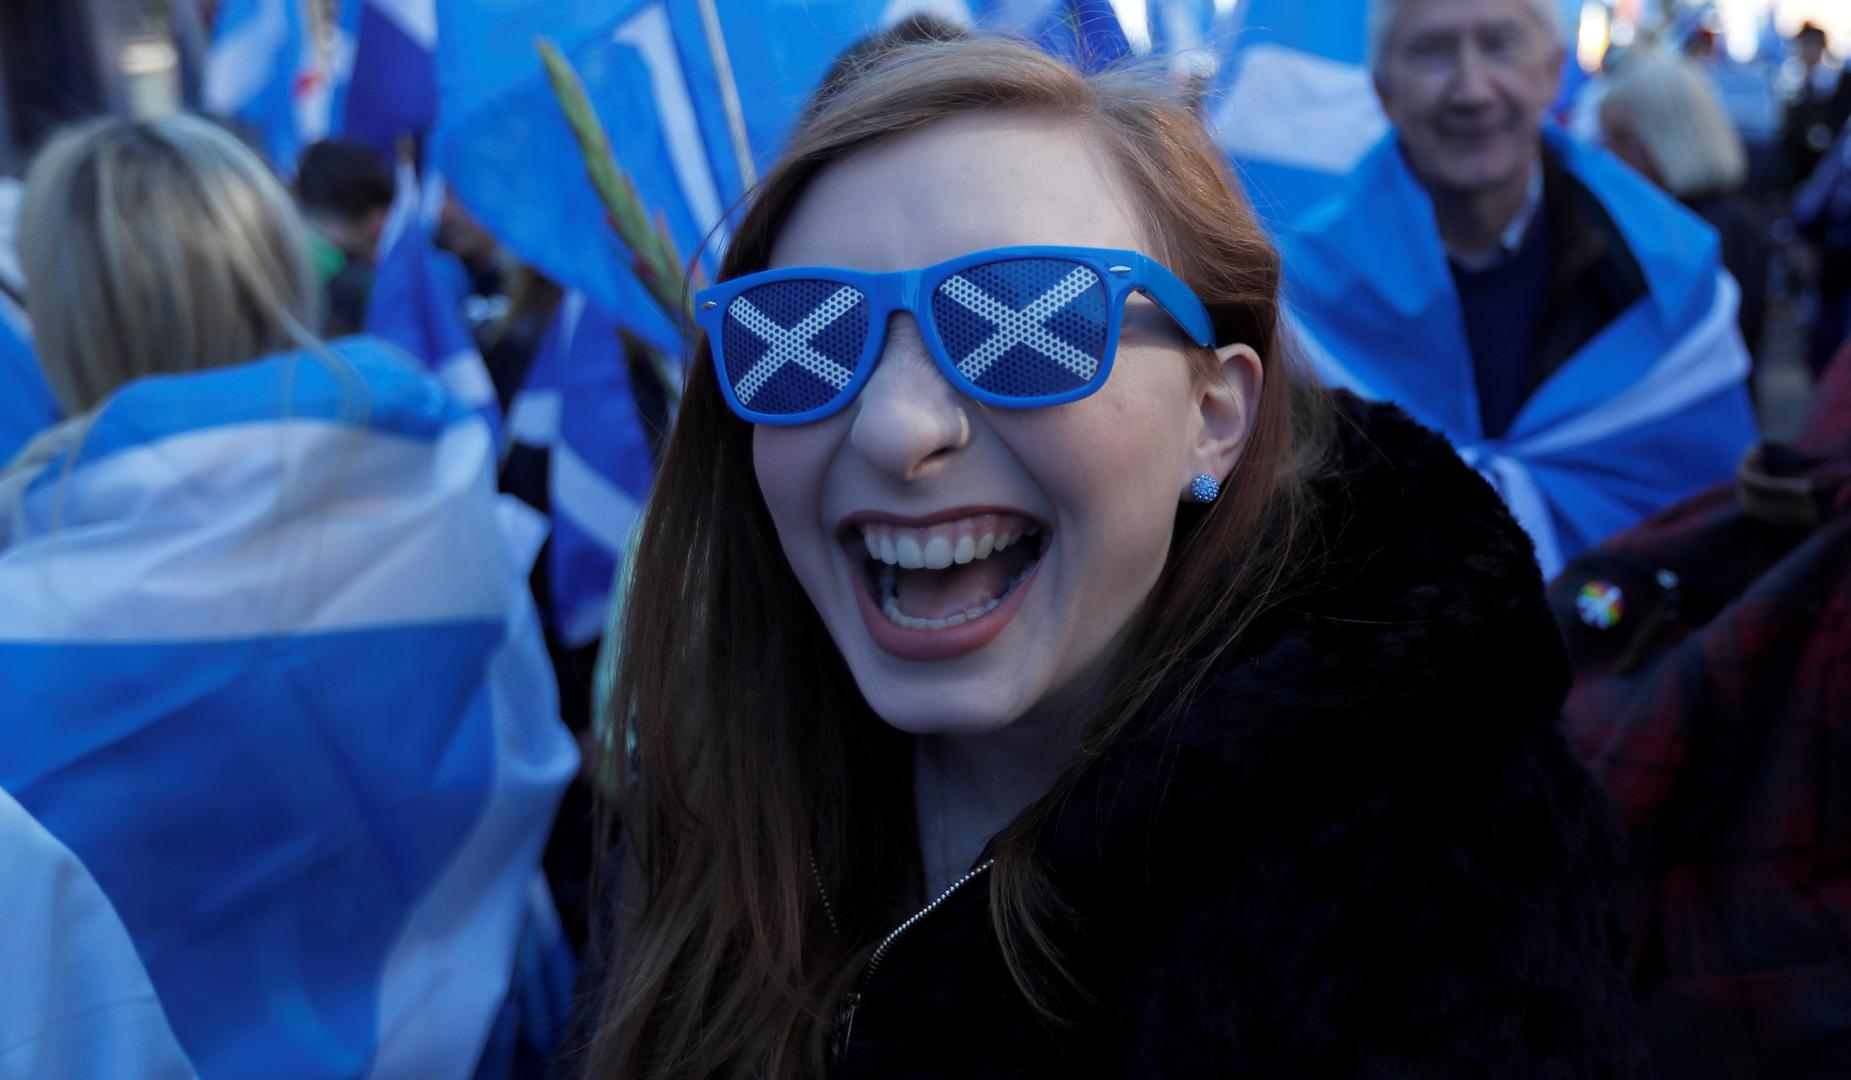 Dvadeset tisuća ljudi sudjelovalo je u subotu u Edinburghu u prosvjednoj šetnji za neovisnost Škotske, izvijestile su mjesne vlasti.